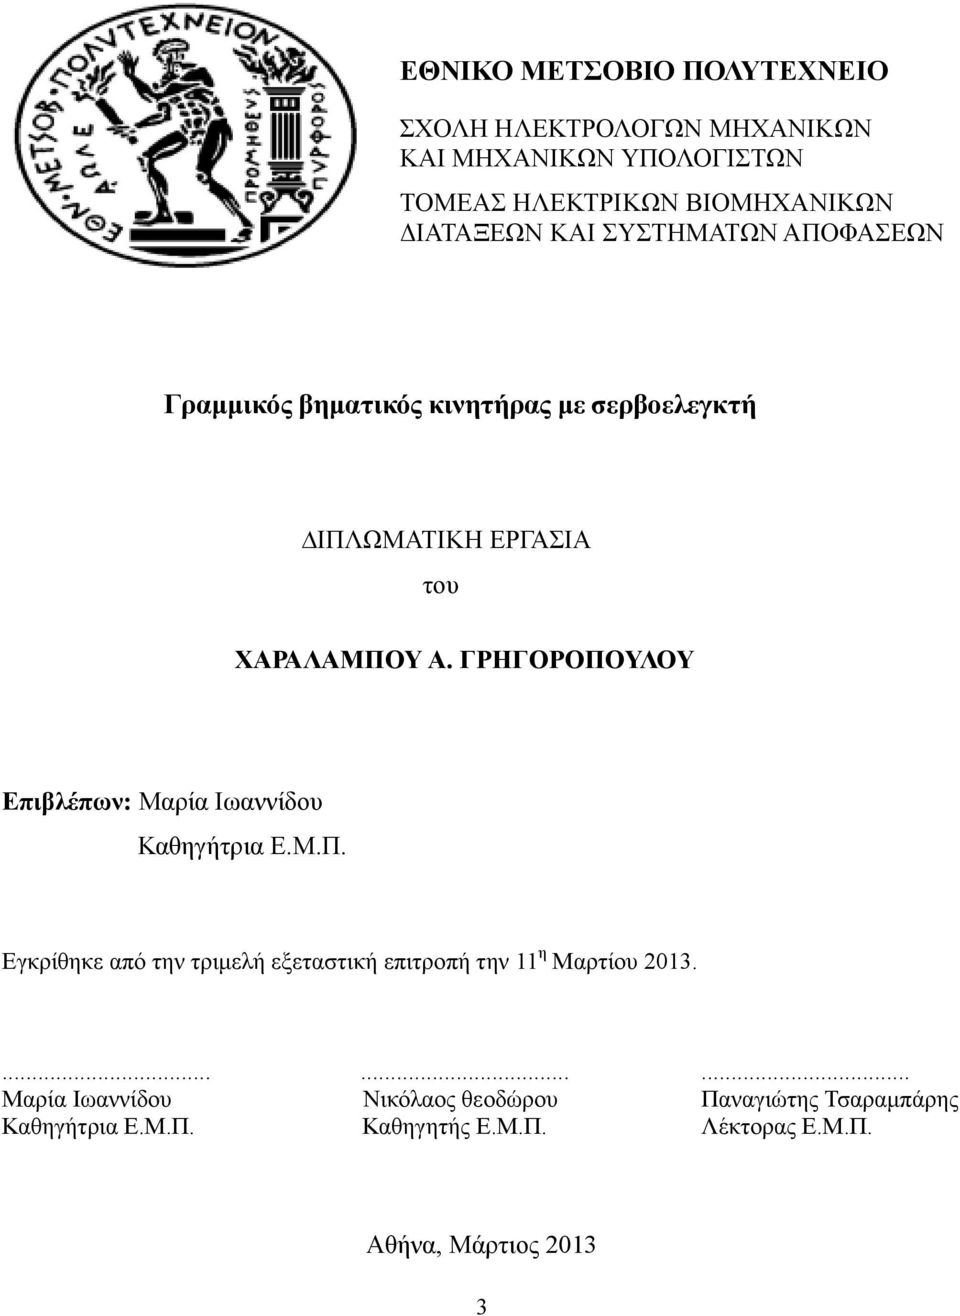 ΓΡΗΓΟΡΟΠΟΥΛΟΥ Επιβλέπων: Μαρία Ιωαννίδου Καθηγήτρια Ε.Μ.Π. Εγκρίθηκε από την τριµελή εξεταστική επιτροπή την 11 η Μαρτίου 2013.